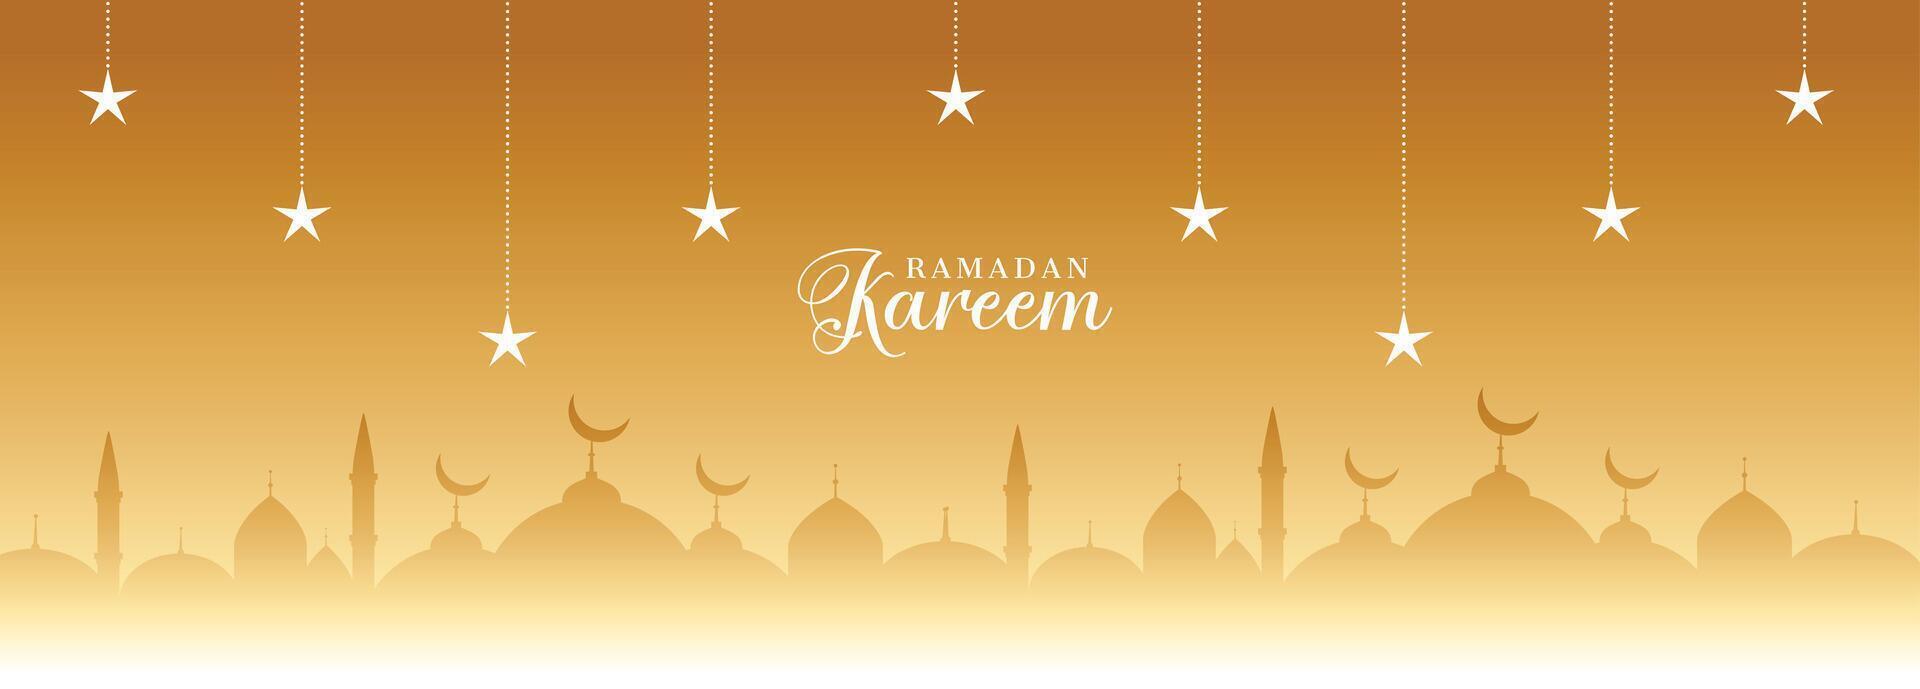 Ramadan kareem gouden banier met sterren en moskee vector